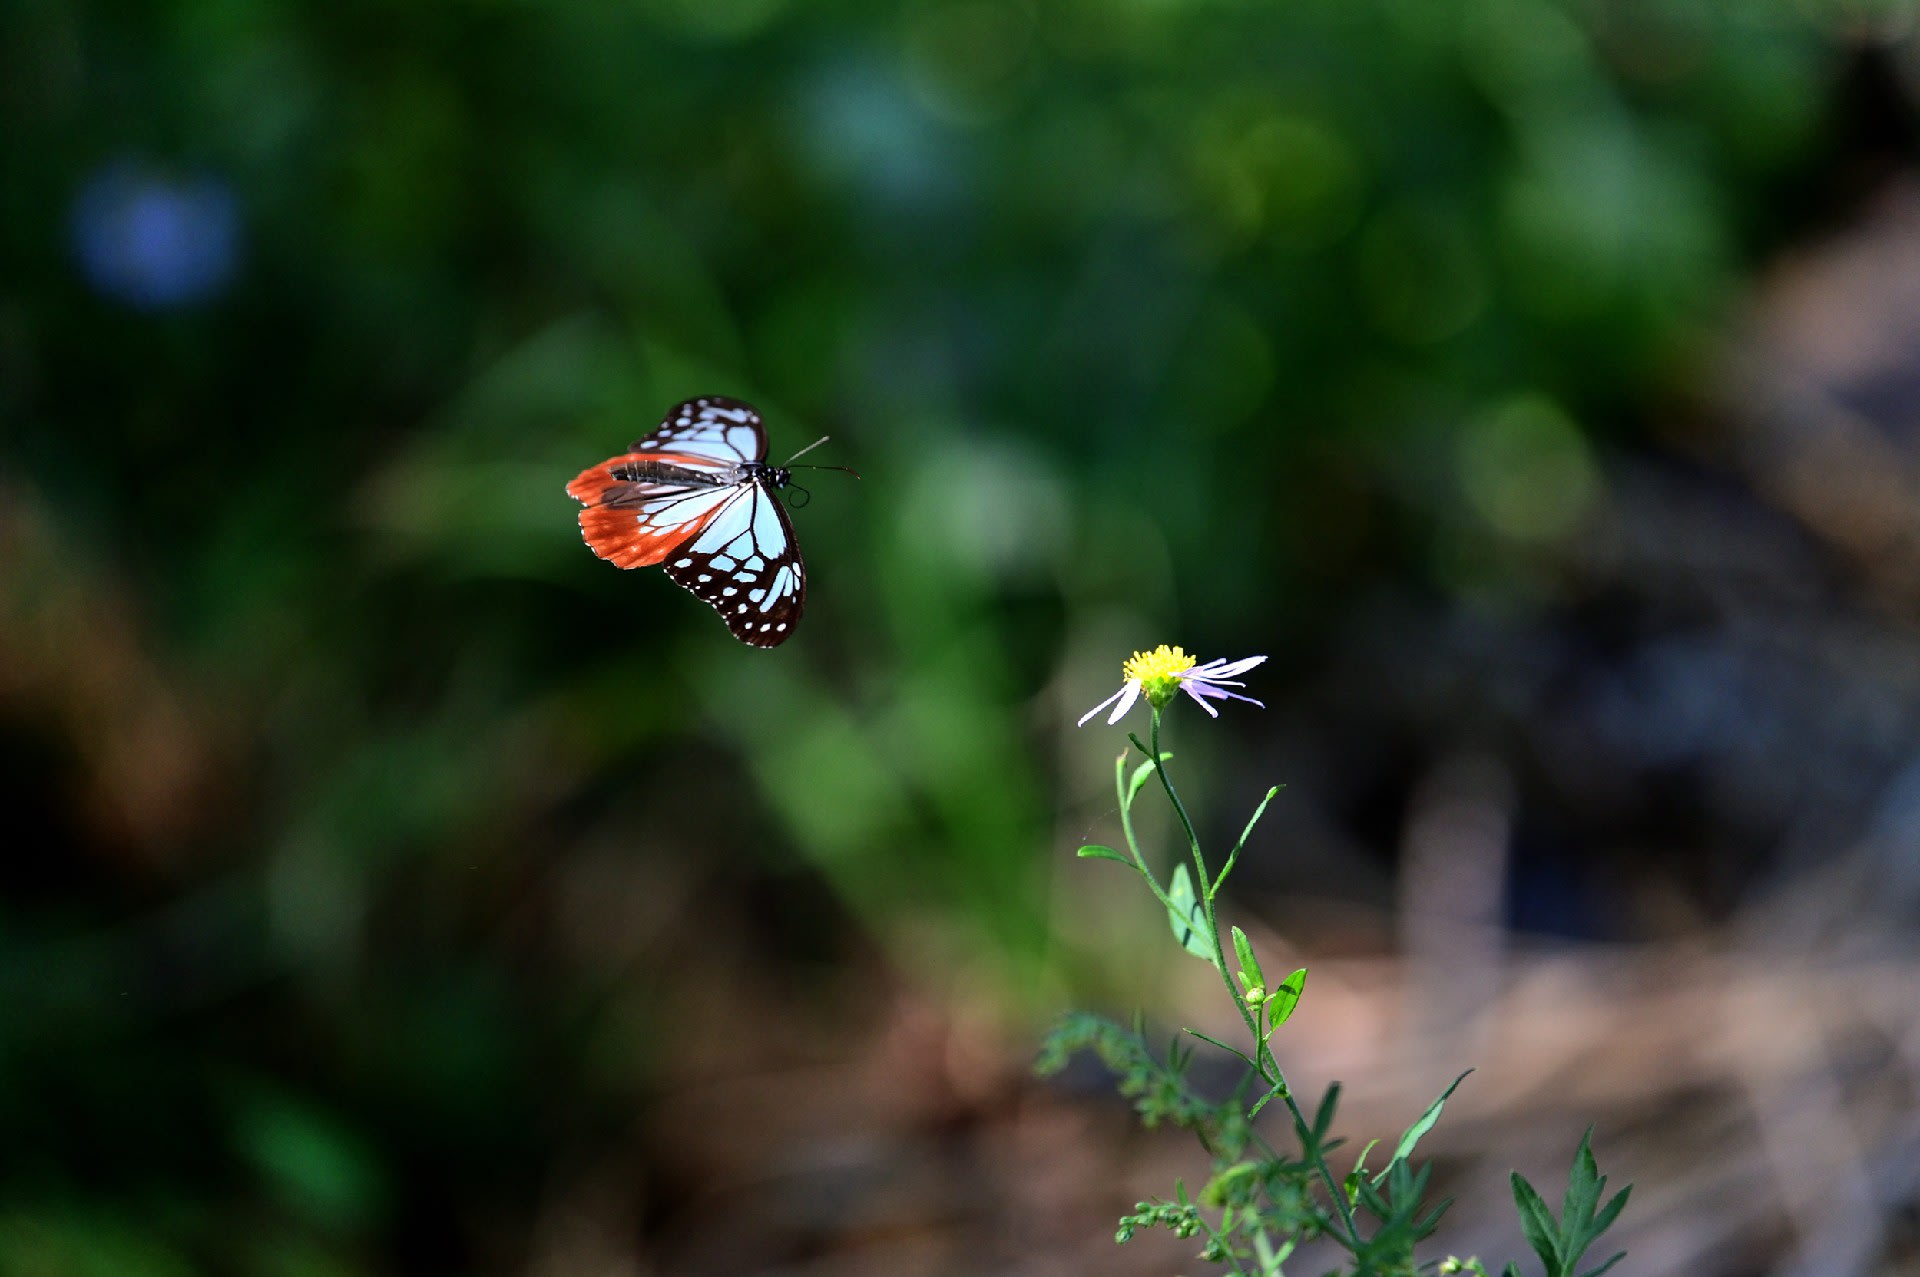 Hình hình ảnh con cái bướm đang được cất cánh vô cùng sinh sống động